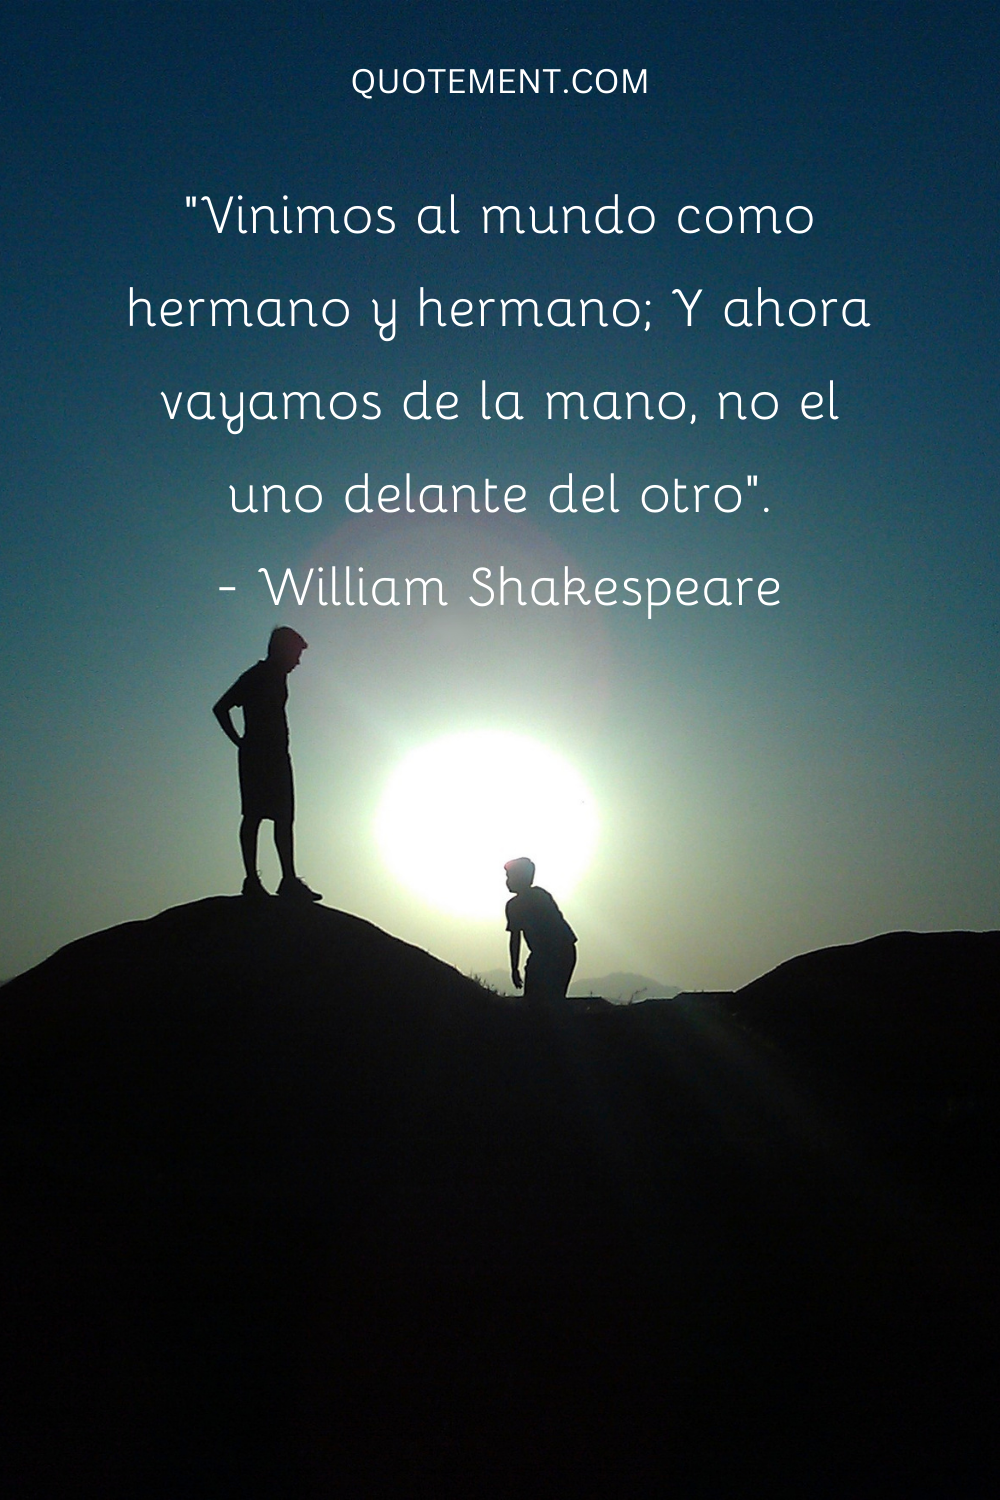 "Vinimos al mundo como hermano y hermano; Y ahora vayamos de la mano, no uno delante del otro". - William Shakespeare